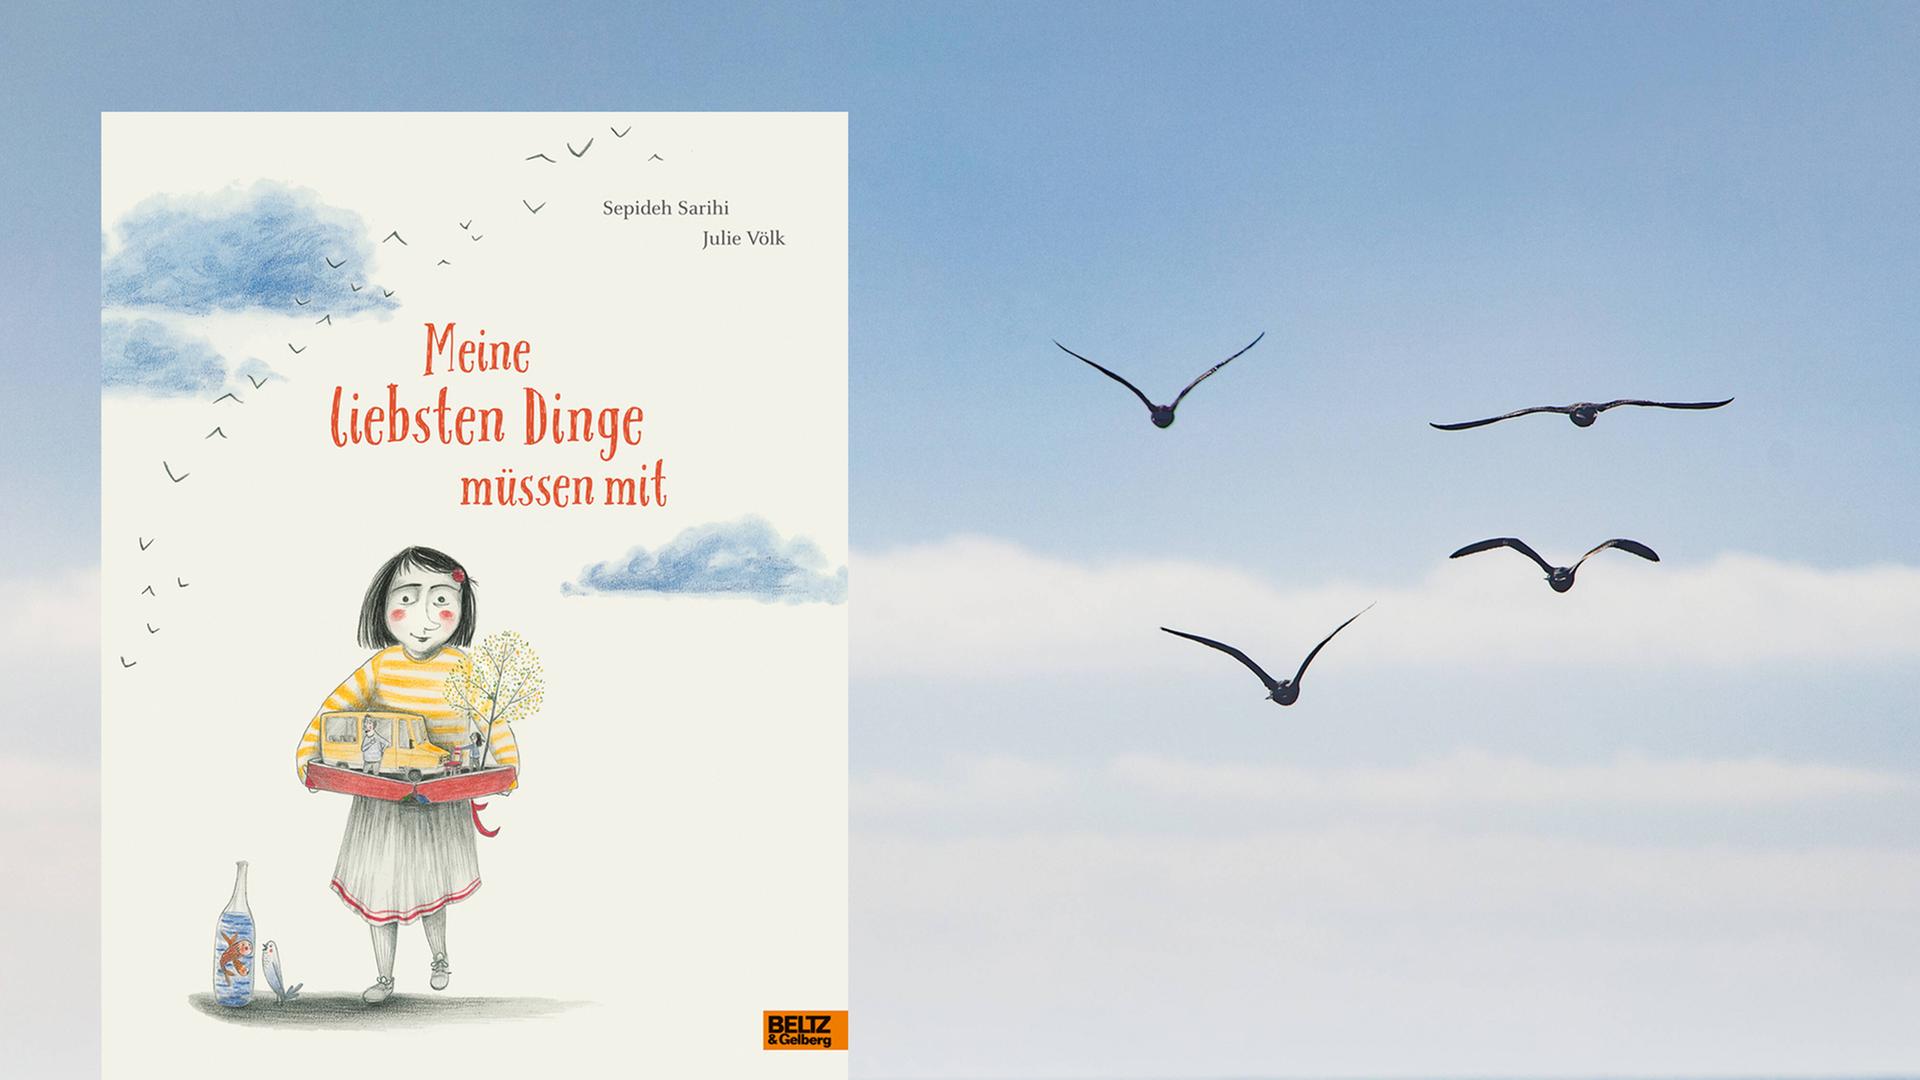 Buchcover: "Meine liebsten Dinge müssen mit" von Sepideh Sarihi / Julie Völk. Im Hintergrund: Vögel fliegen durch die Luft.